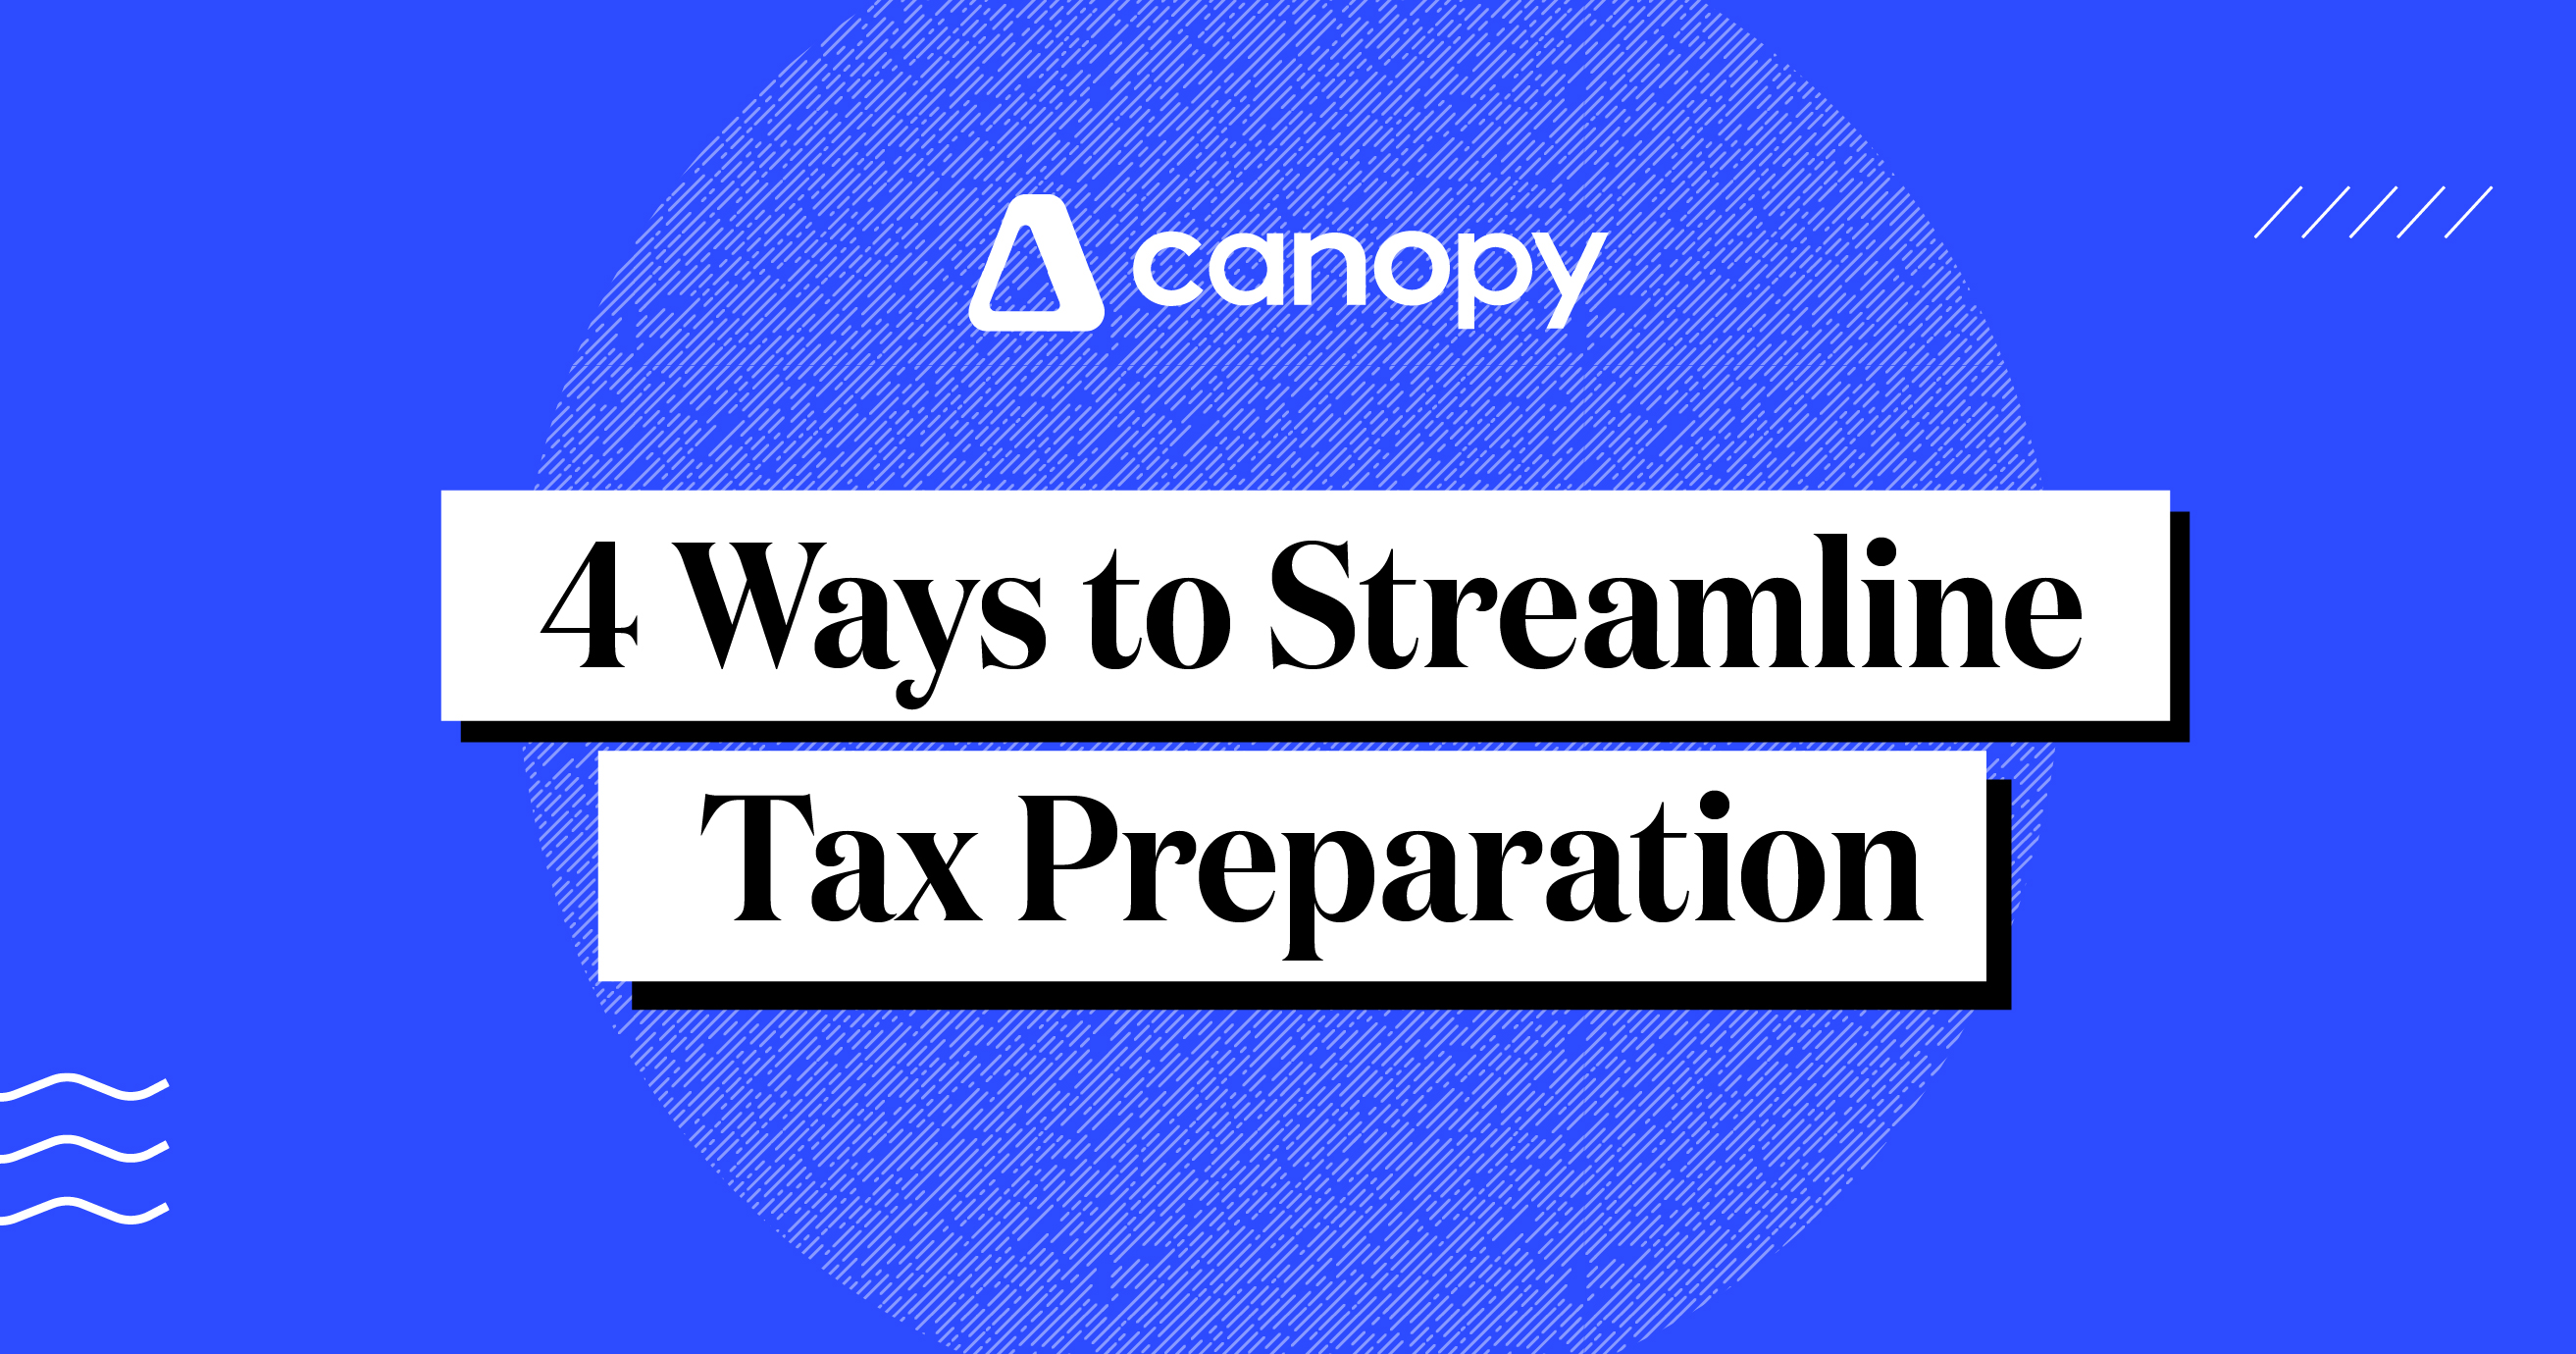 4 Ways to Streamline Tax Preparation